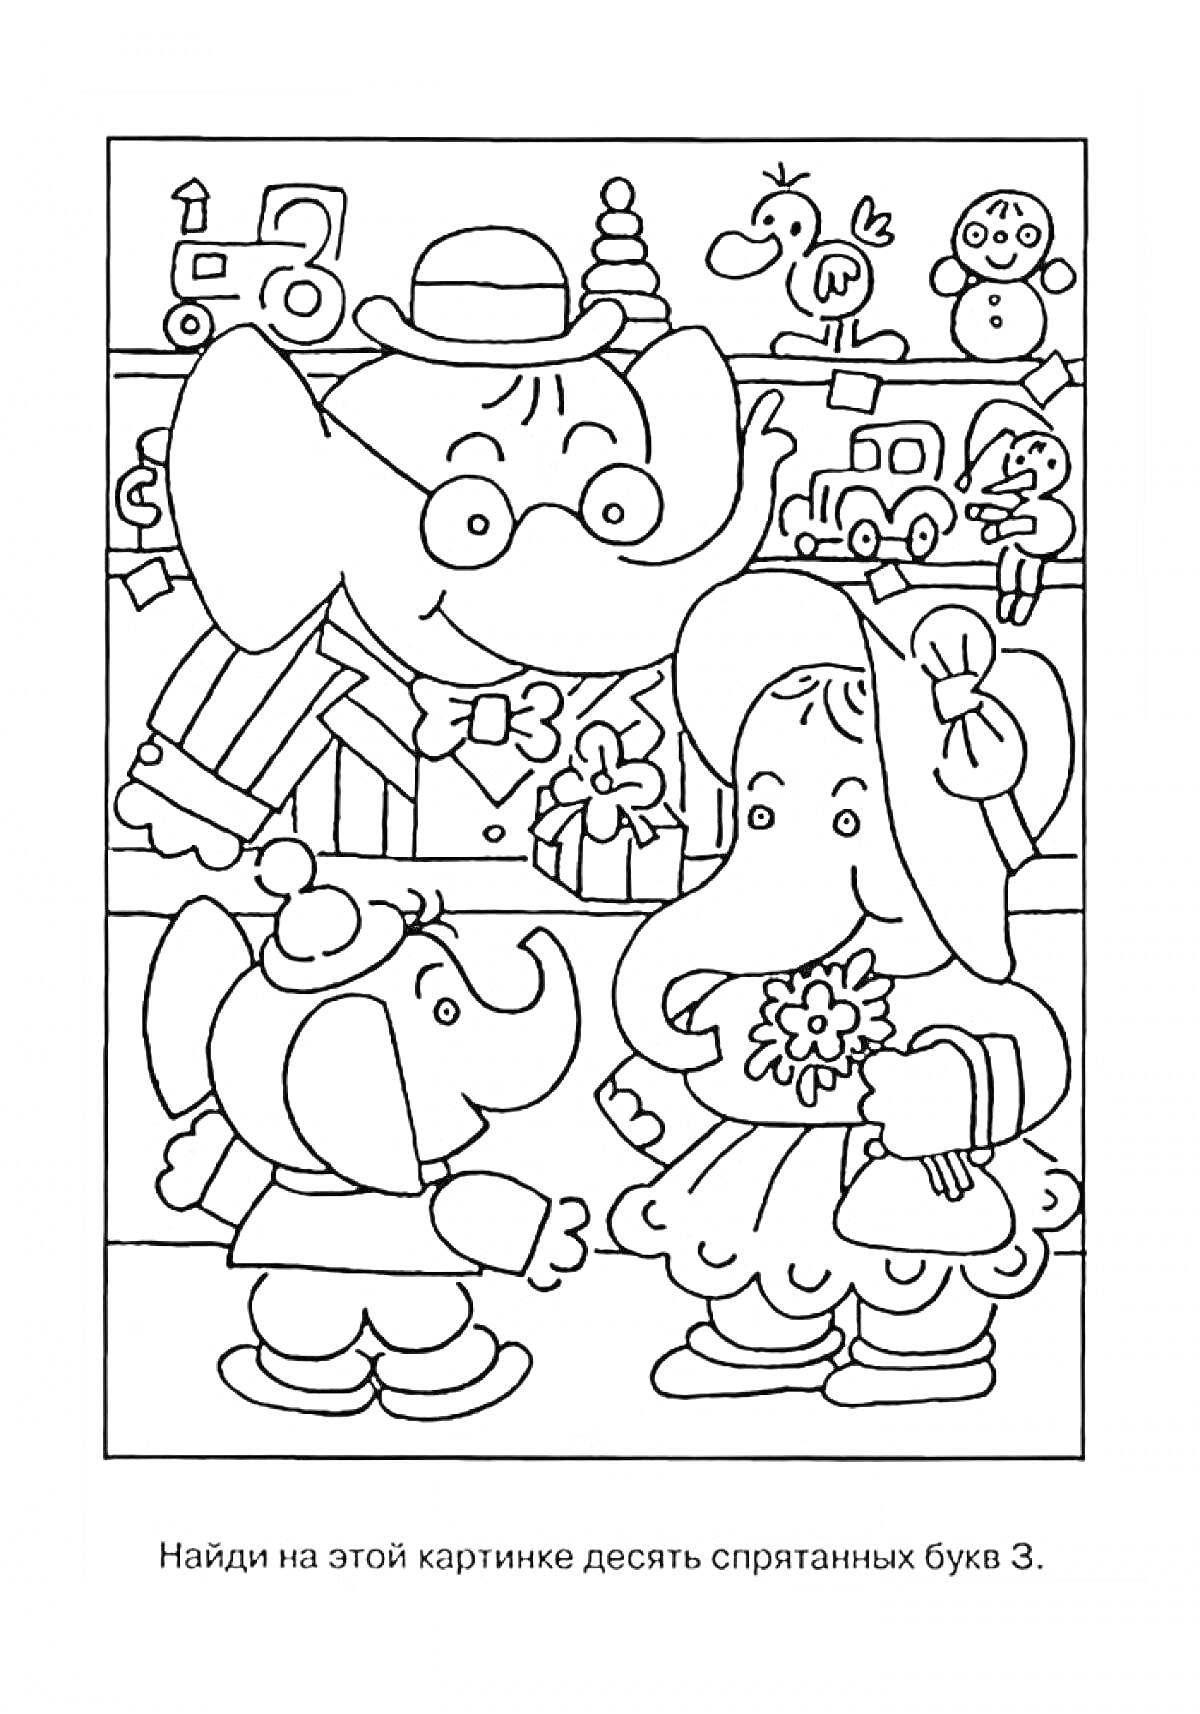 На раскраске изображено: Магазин игрушек, Буква З, Поезд, Часы, Игрушки, Для детей, Слон, Для взрослых, Клоуны